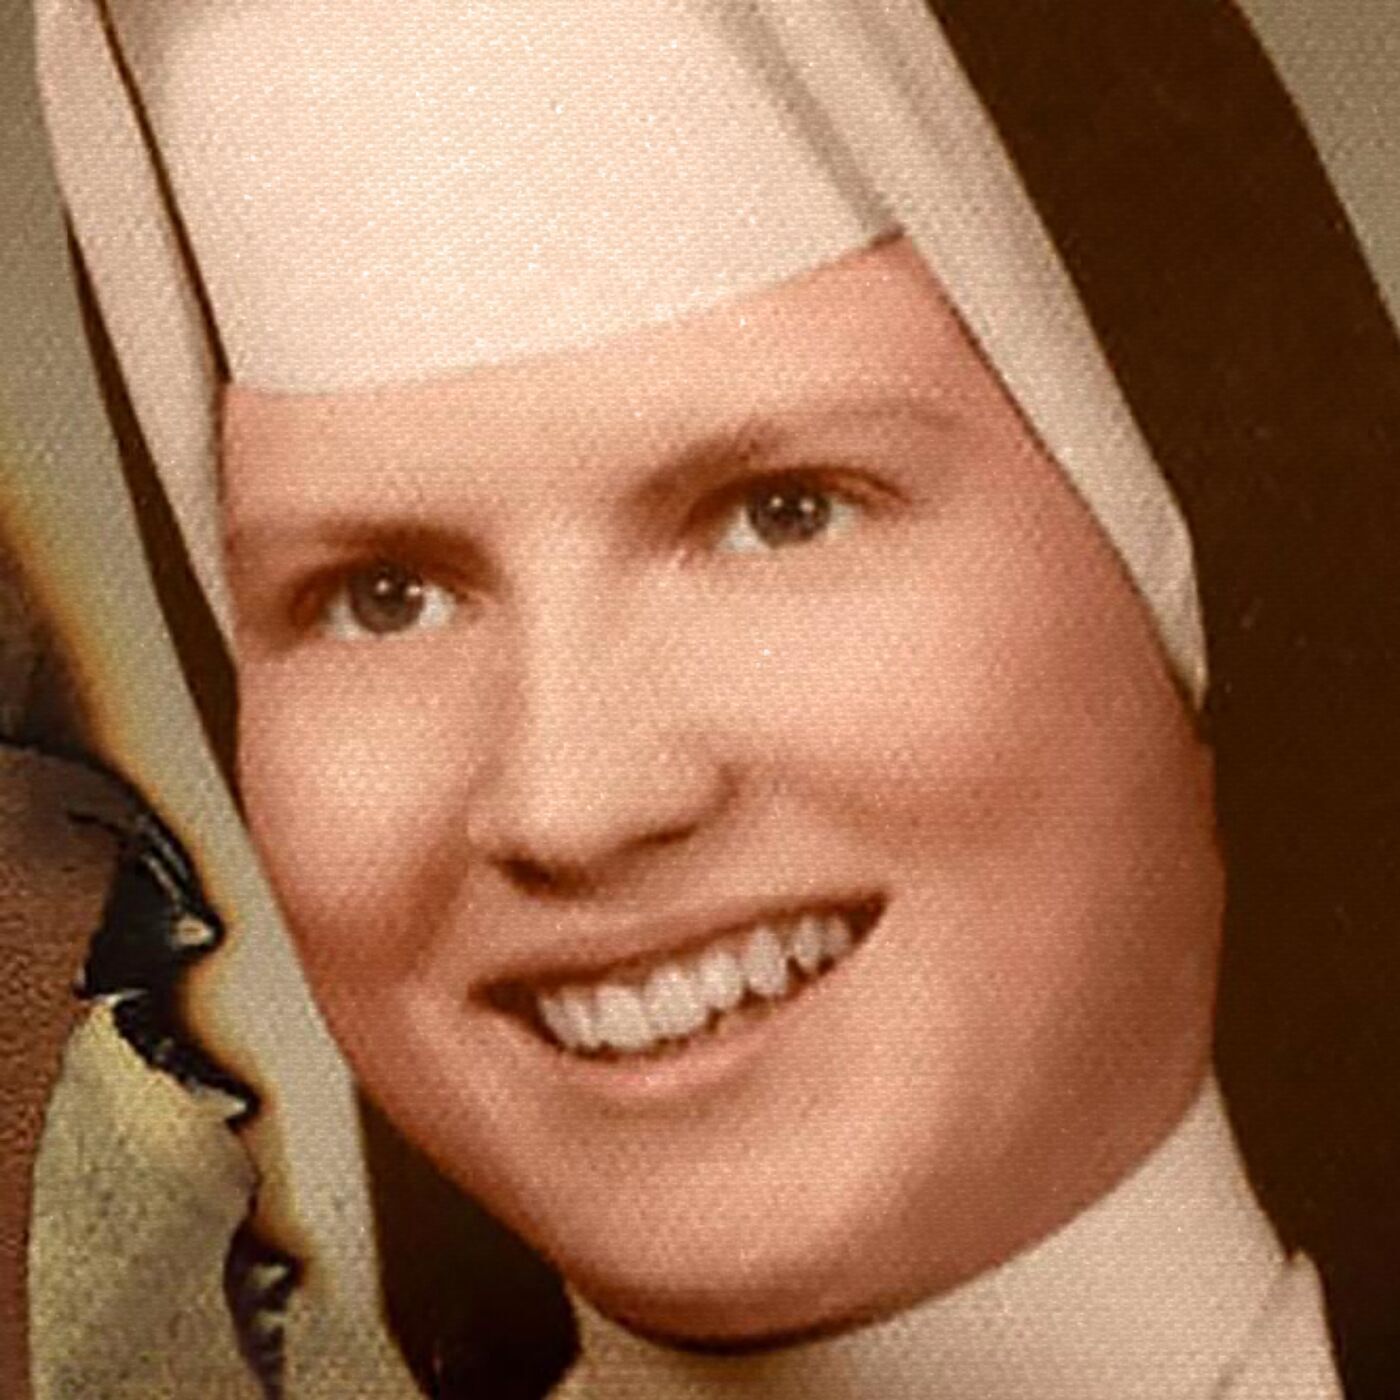 S2 Ep48: Sister Cathy, Beyond the Veil – A Nun’s Choice, Part 1